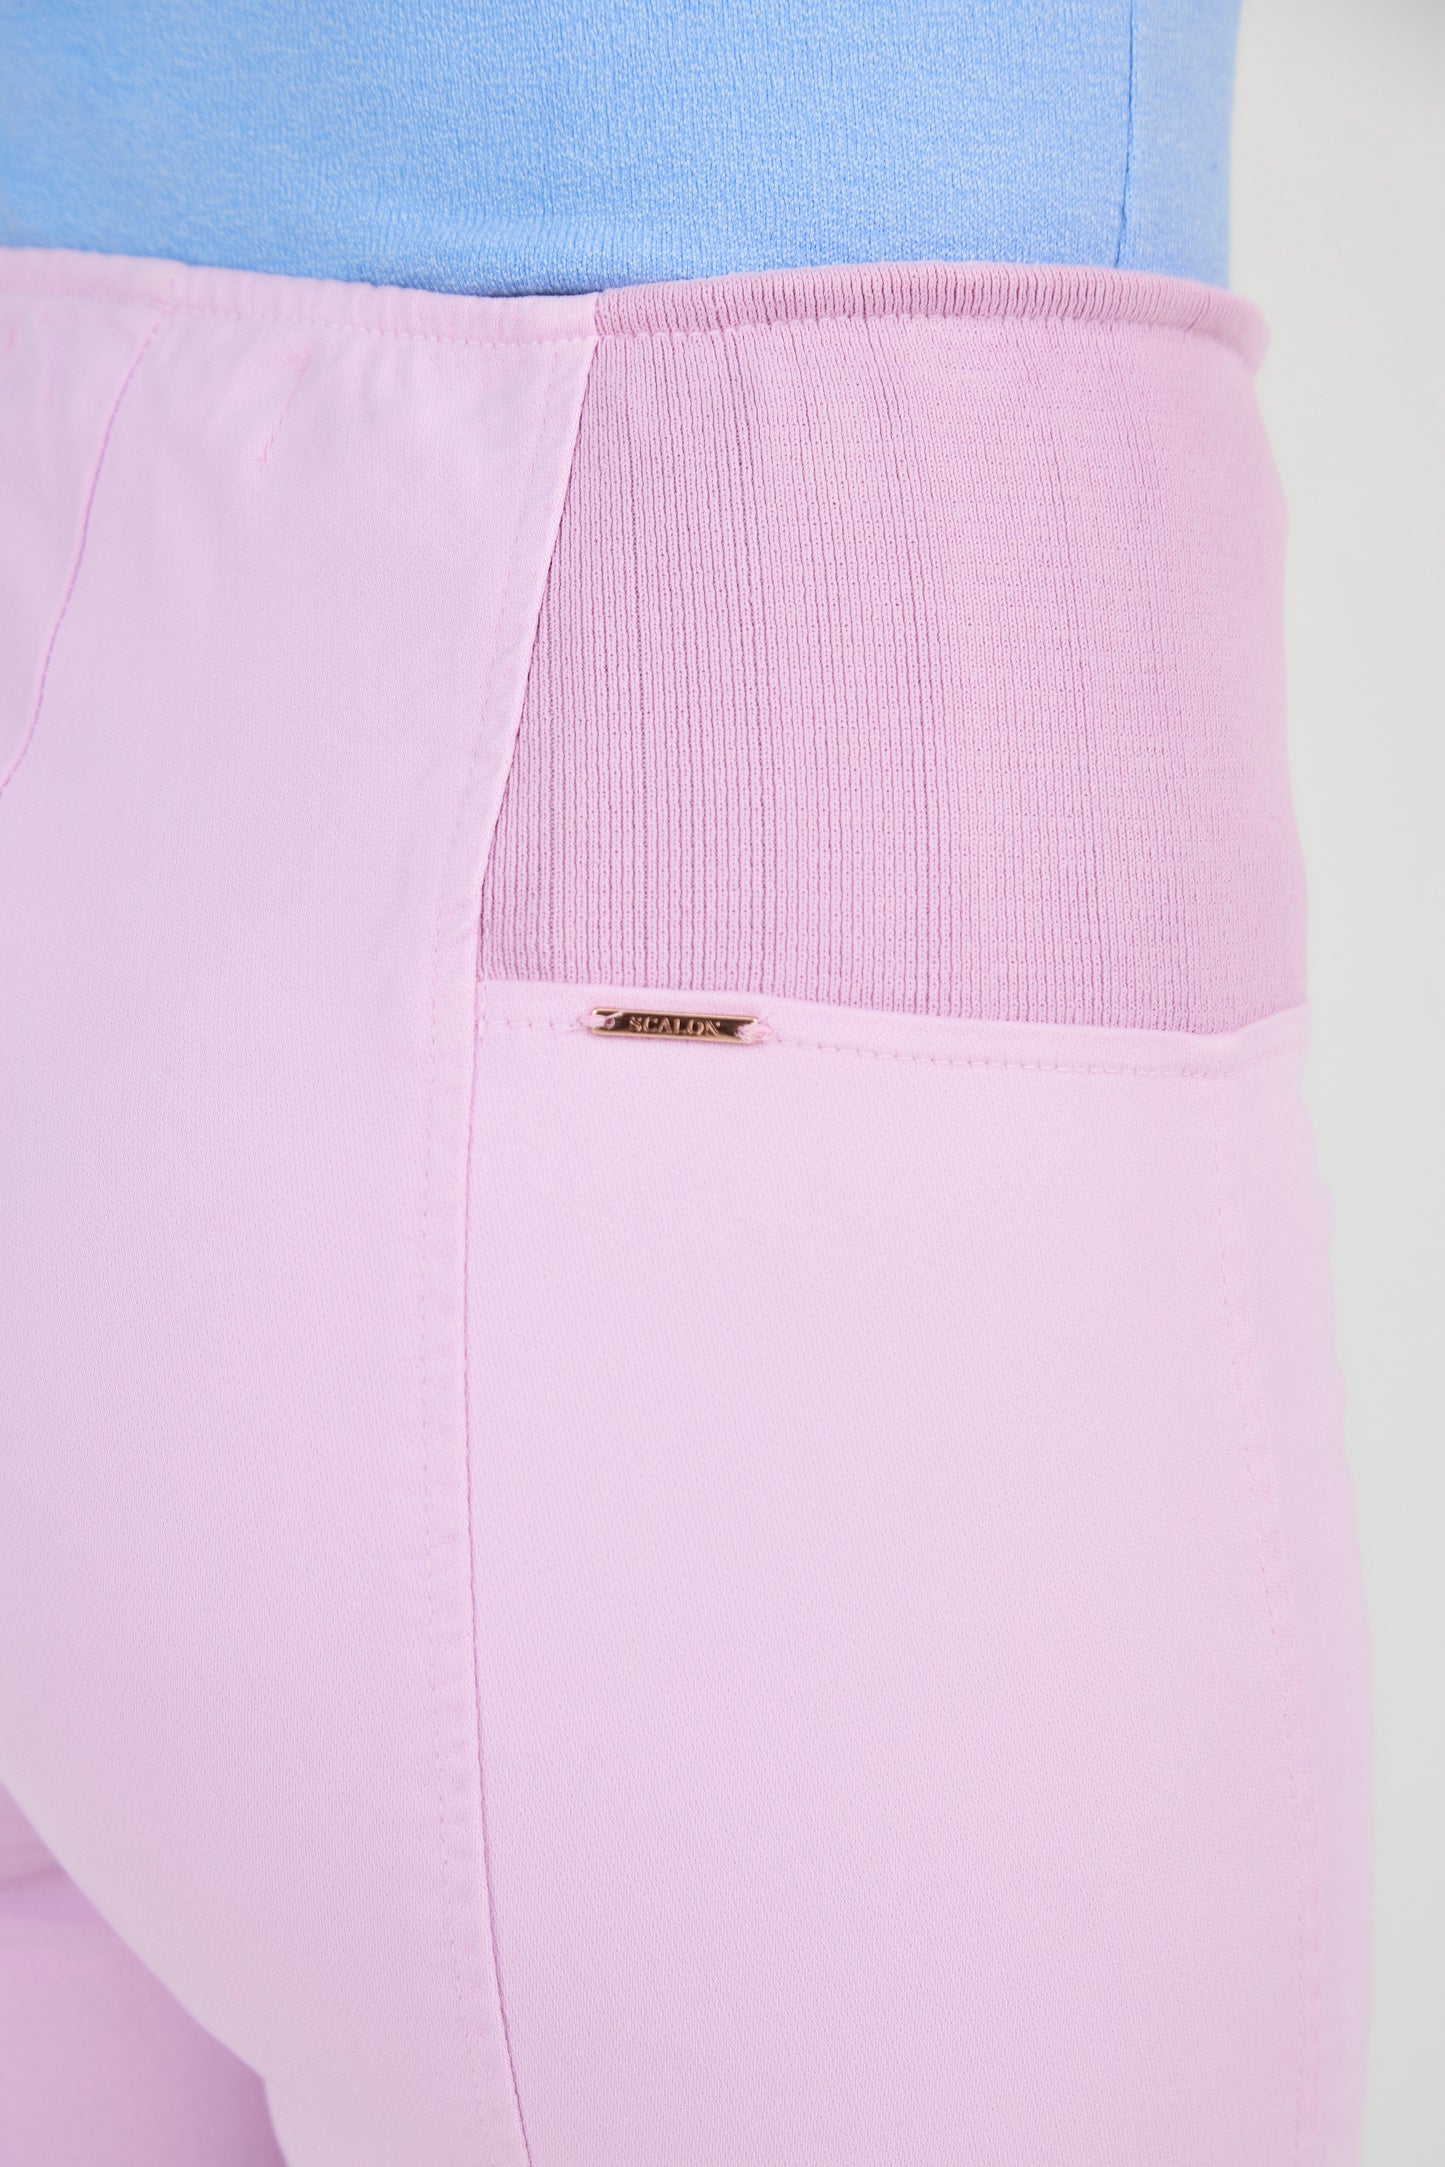 calça malha color cropped cintura intermediária cós de tricot largo